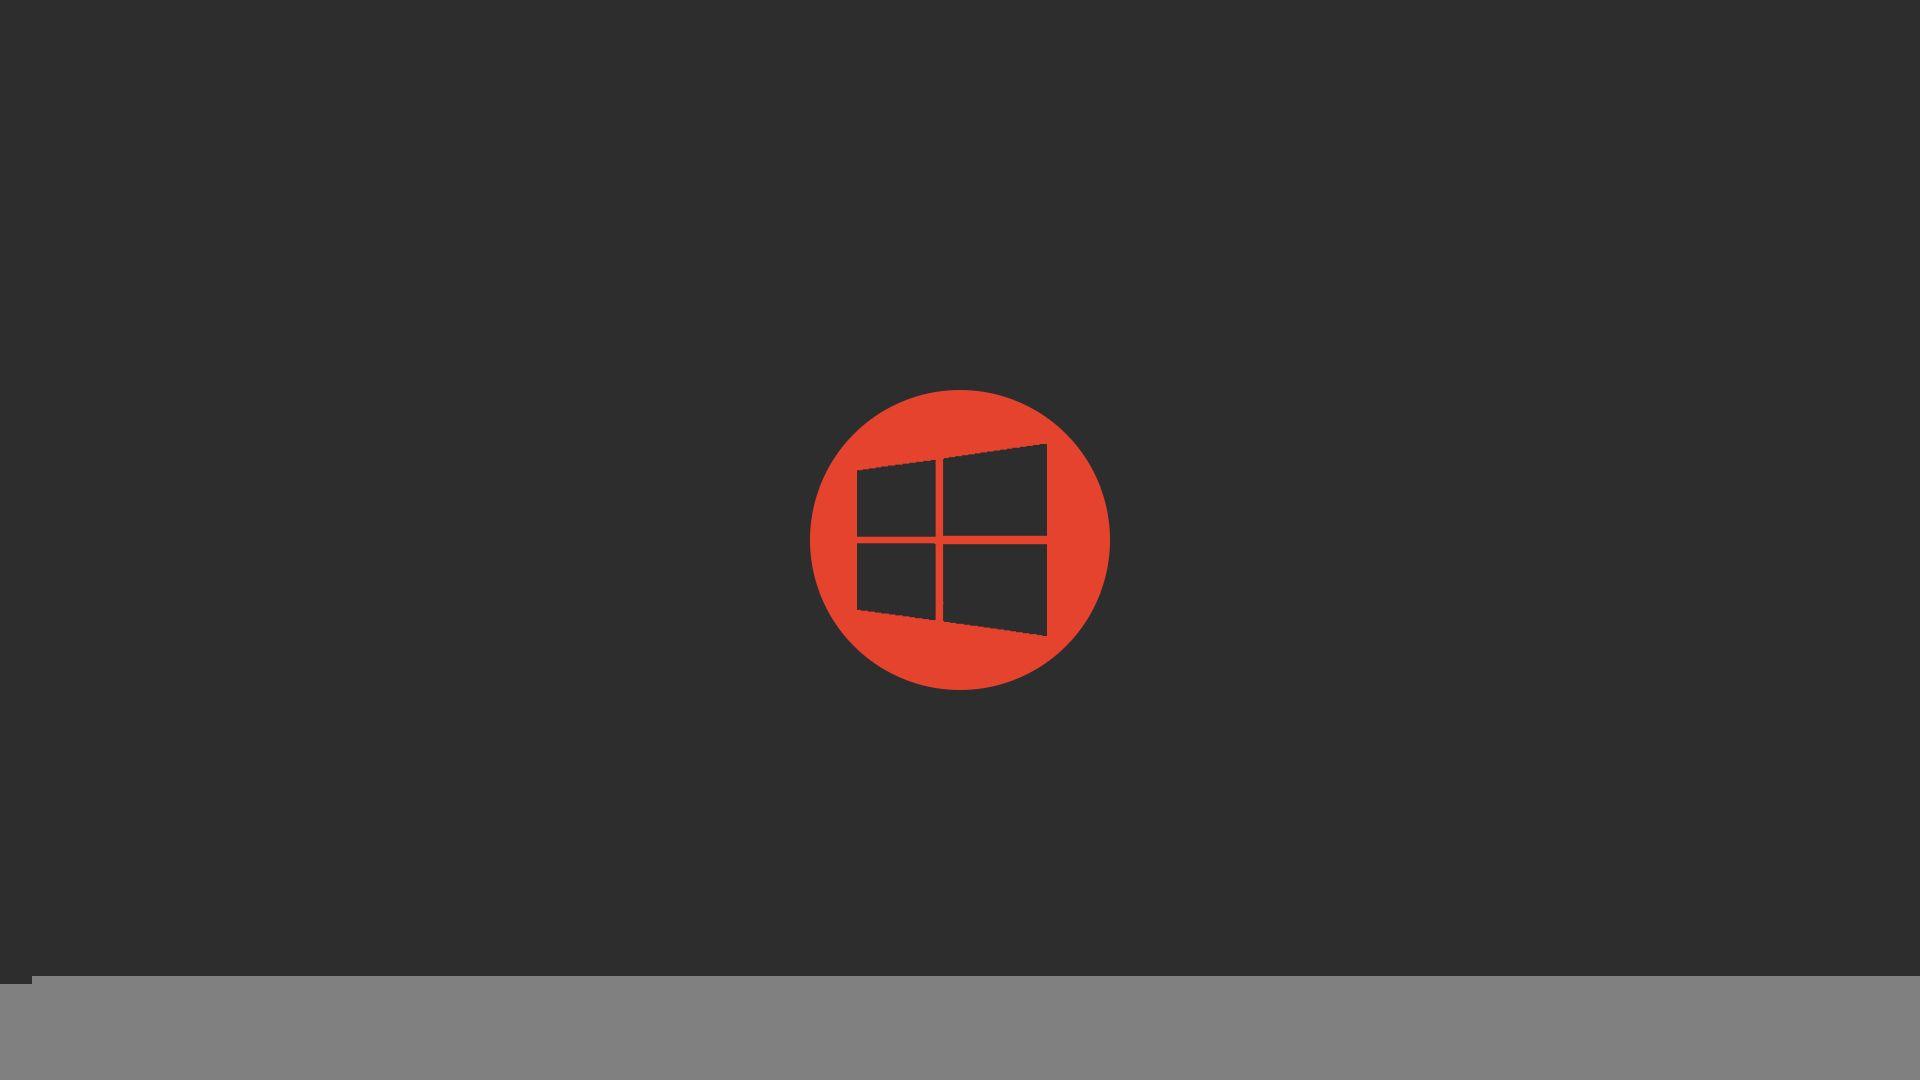 1920x1080 HD Hình nền Microsoft Windows 10 Logo 4k - Hình nền Windows 10